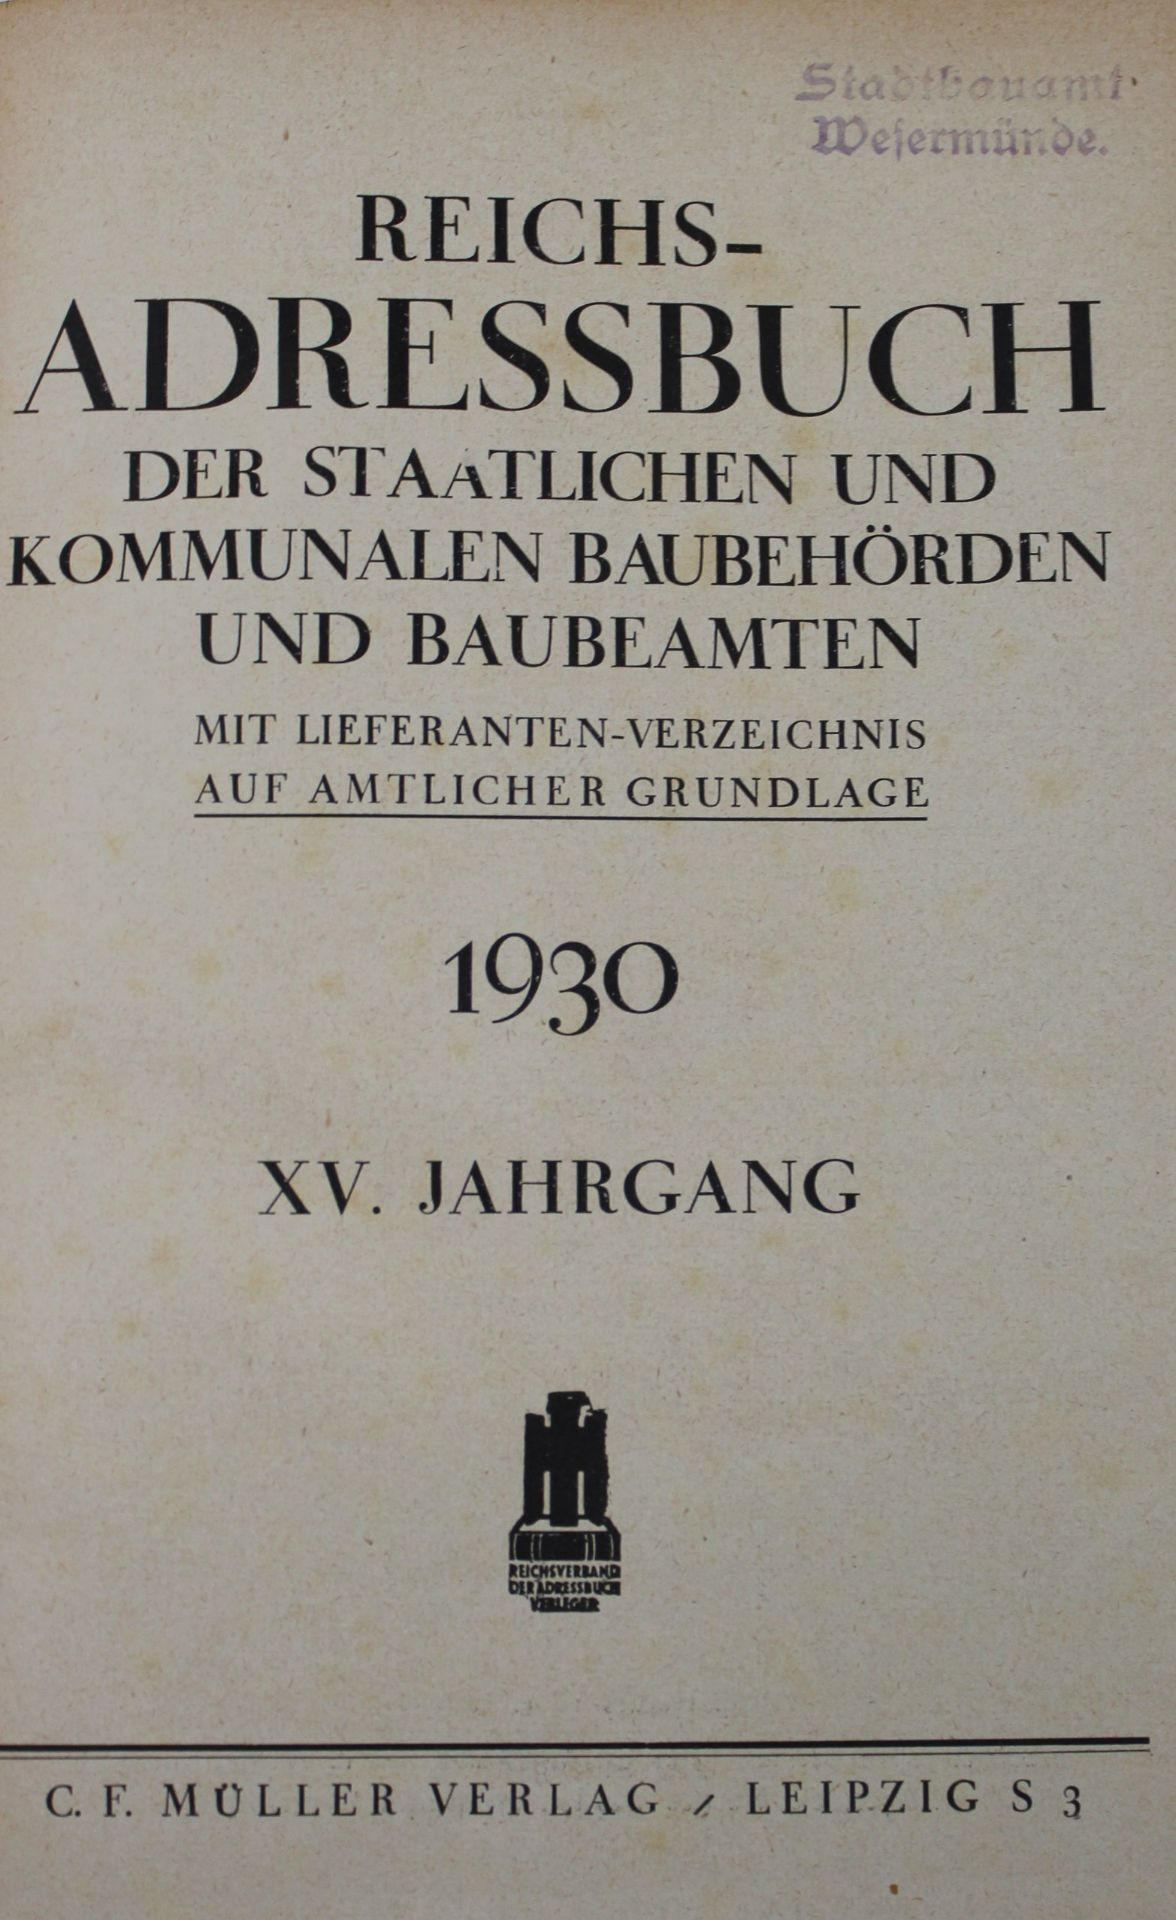 Reichsadressbuch der Staatl. und Kommunal. Baubehörden und Baubeamten, 1930 - Bild 2 aus 3